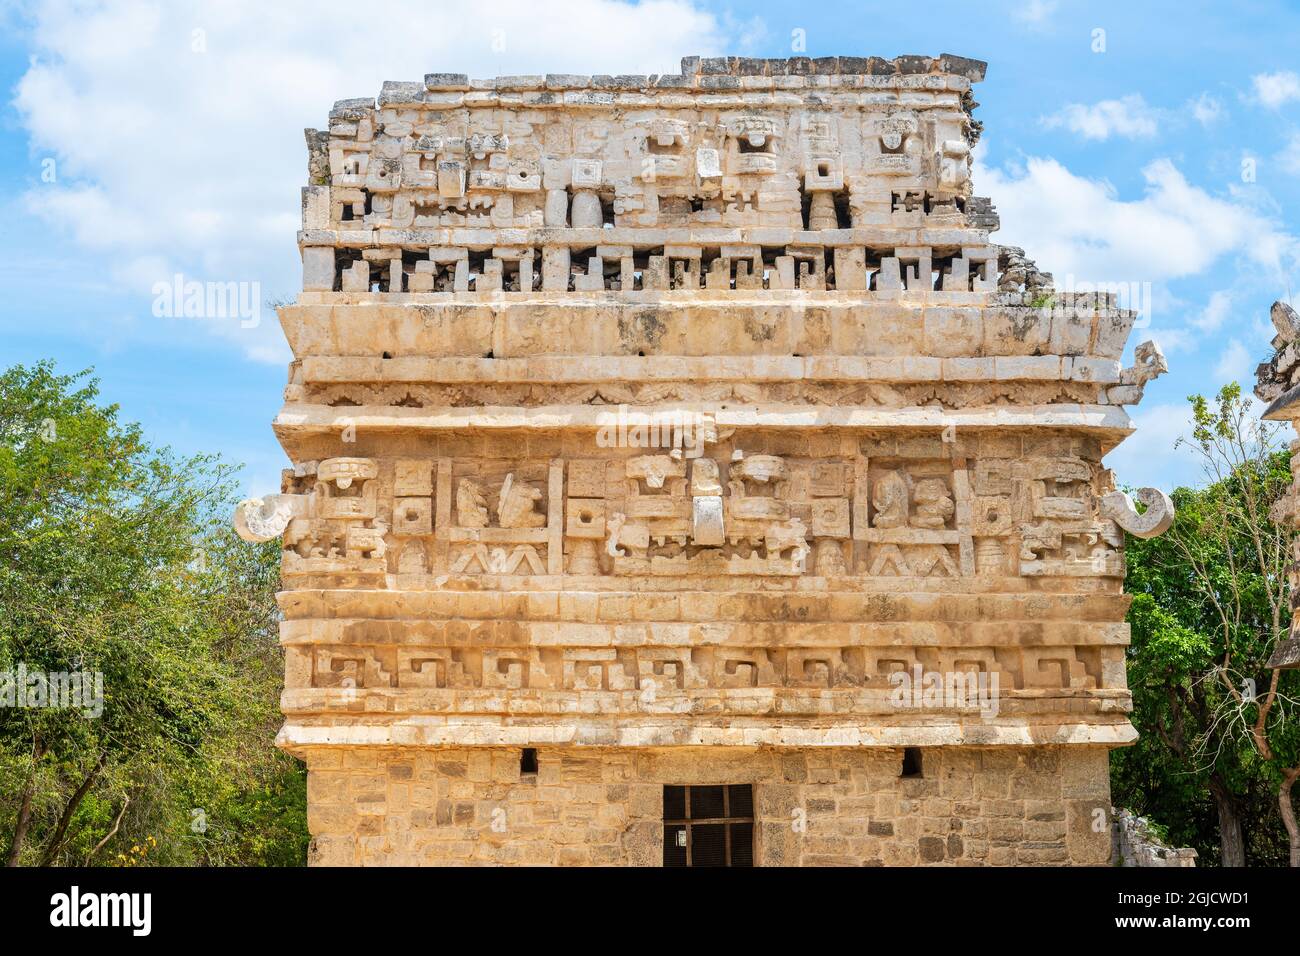 Mayan Puuc style architecture in Chichen Itza, Yucatan, Mexico. Stock Photo